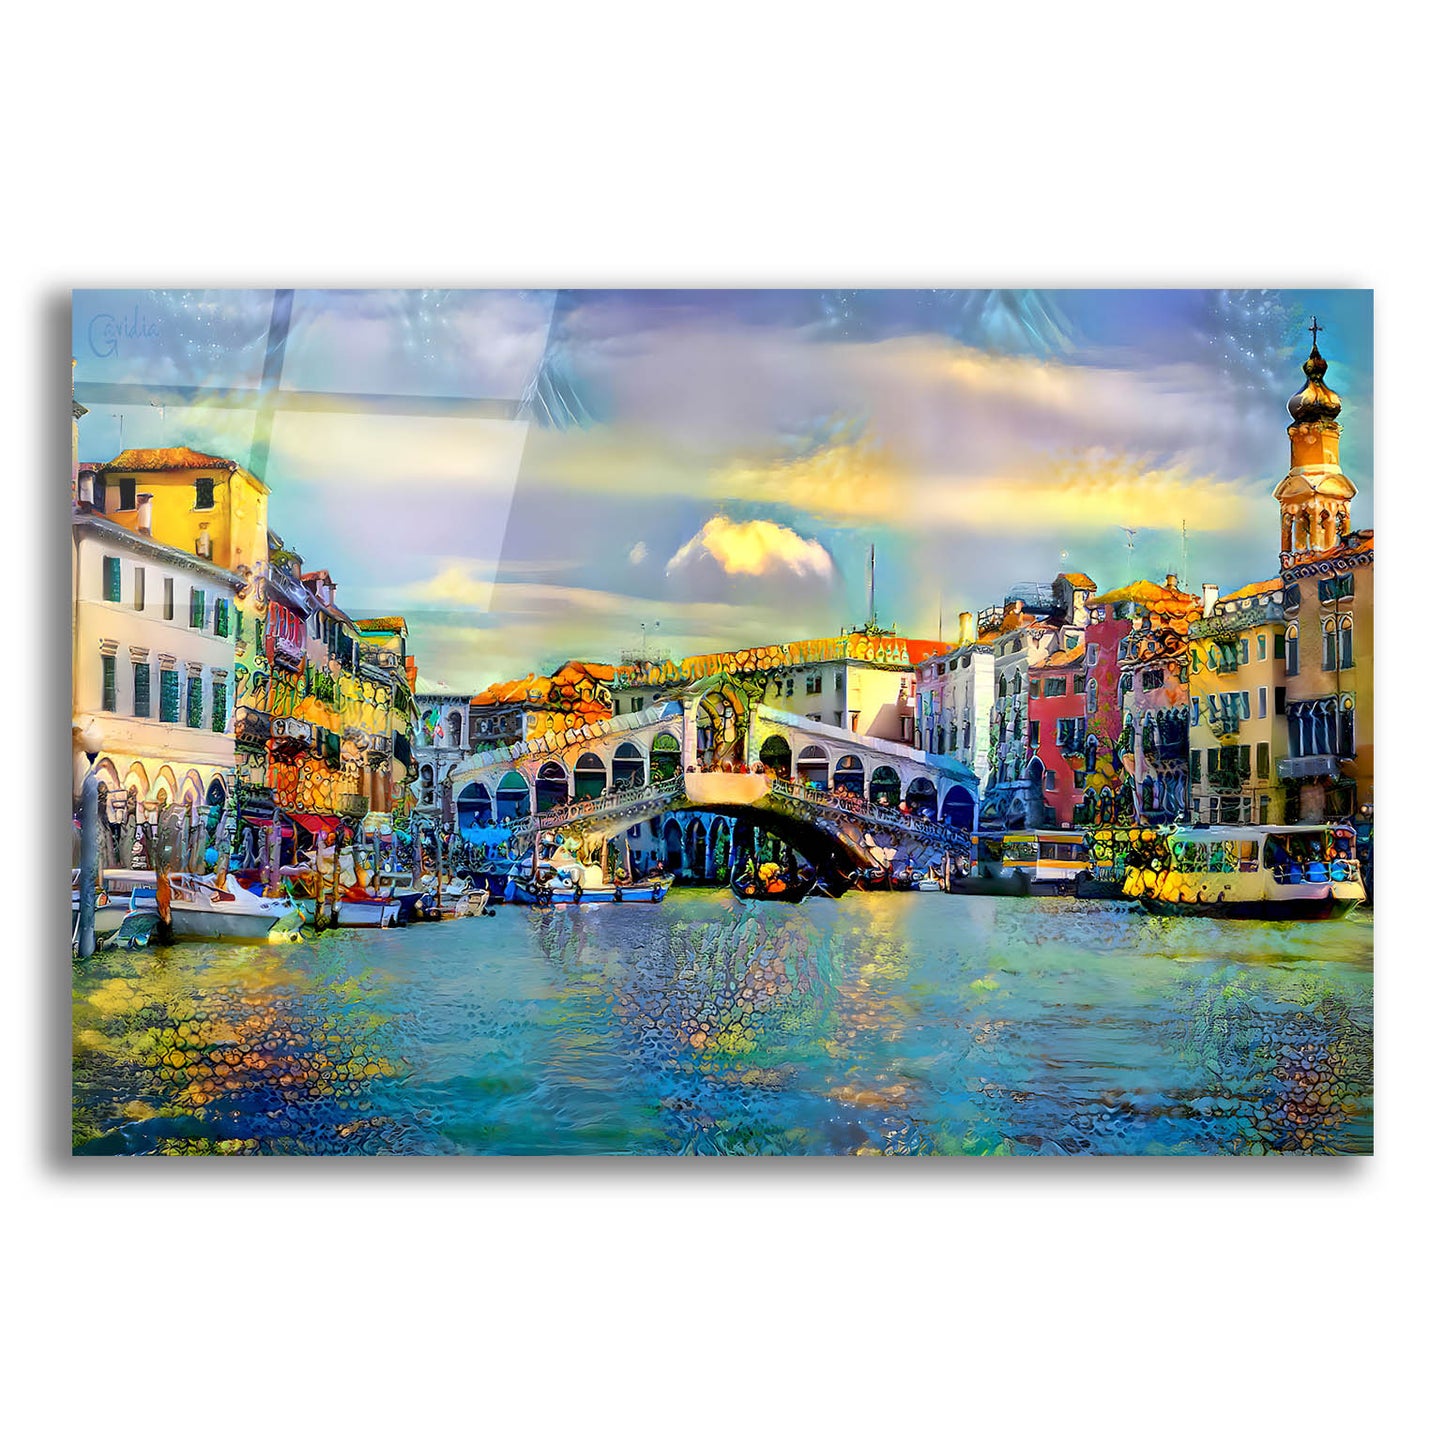 Epic Art 'Venice Italy Rialto Bridge' by Pedro Gavidia, Acrylic Glass Wall Art,24x16